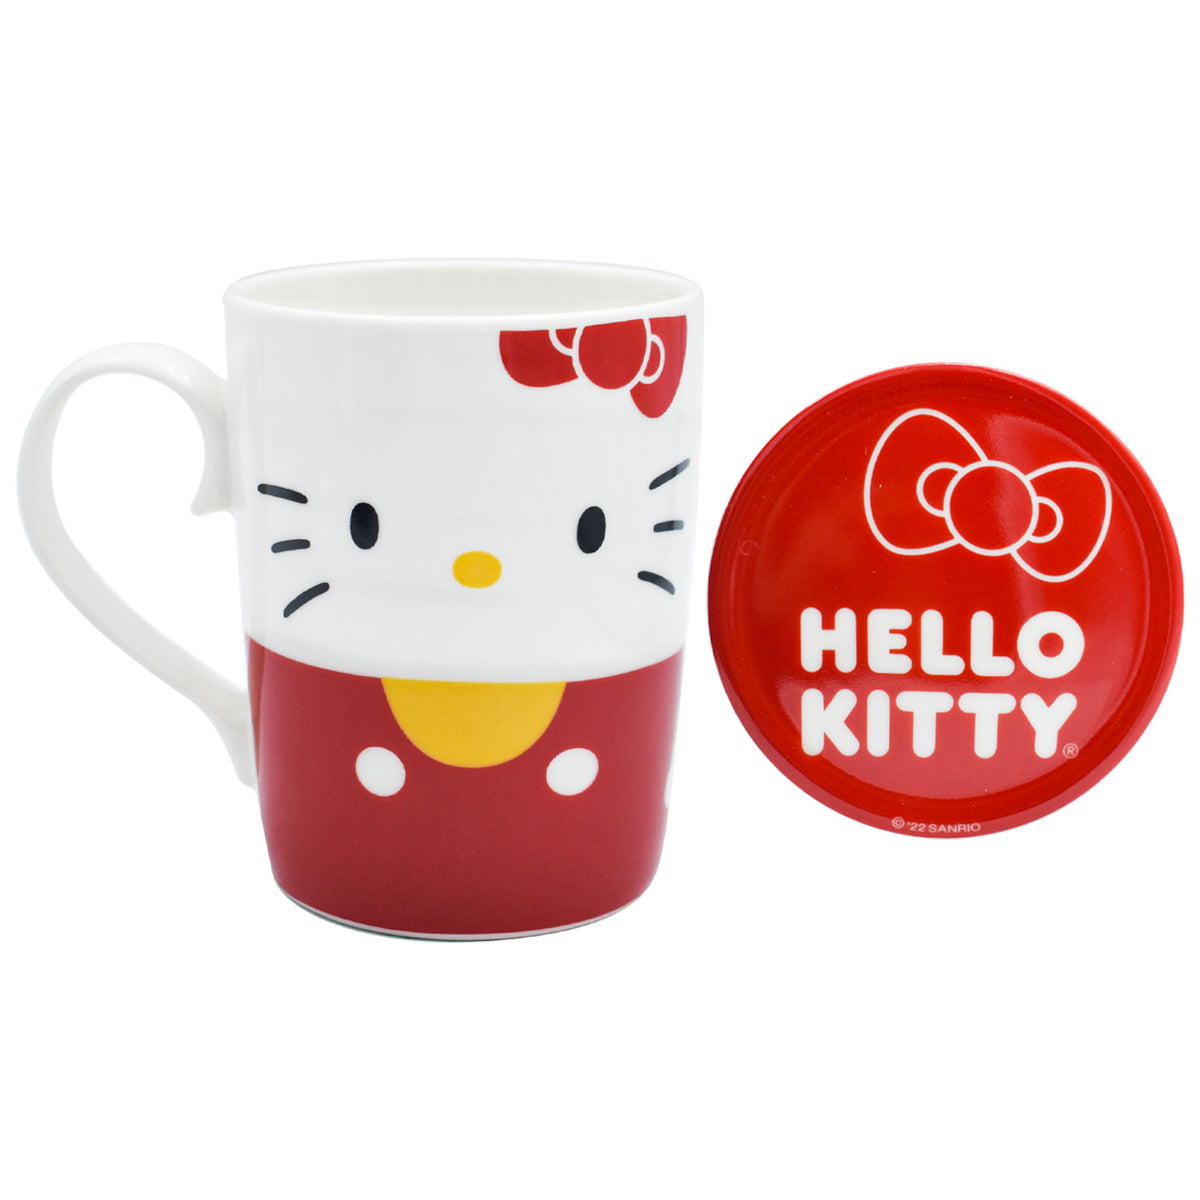 Fun Kids Tarro Con Tapa De Porcelana: Sanrio - Hello Kitty 354 ml